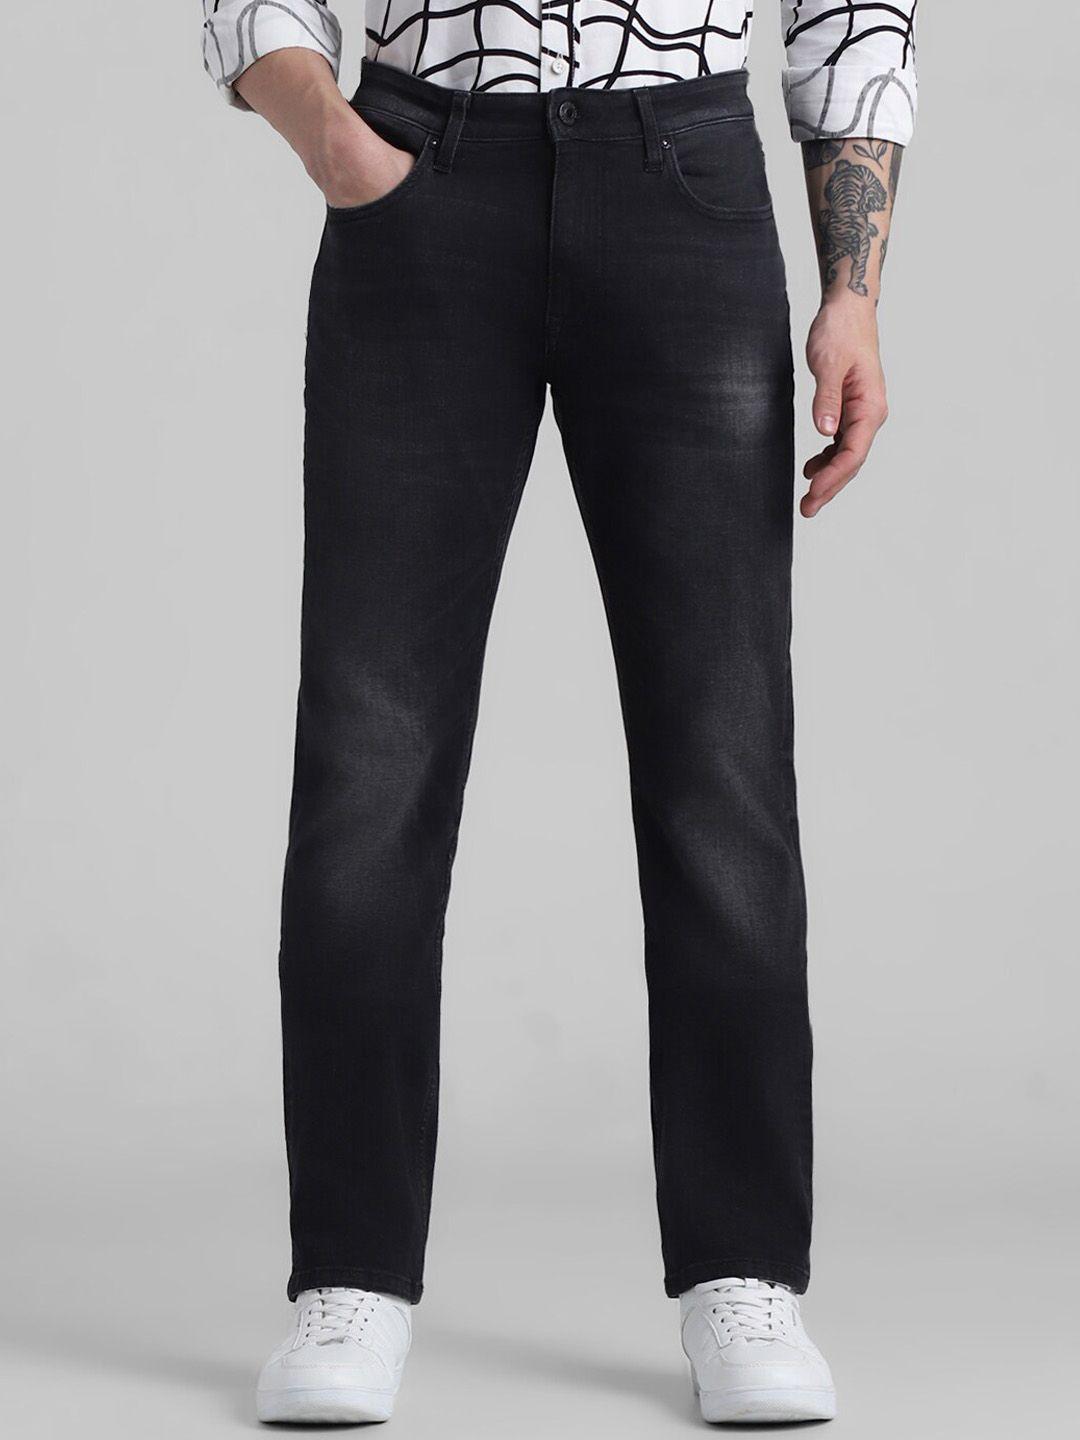 jack-&-jones-men-clark-mid-rise-clean-look-stretchable-jeans